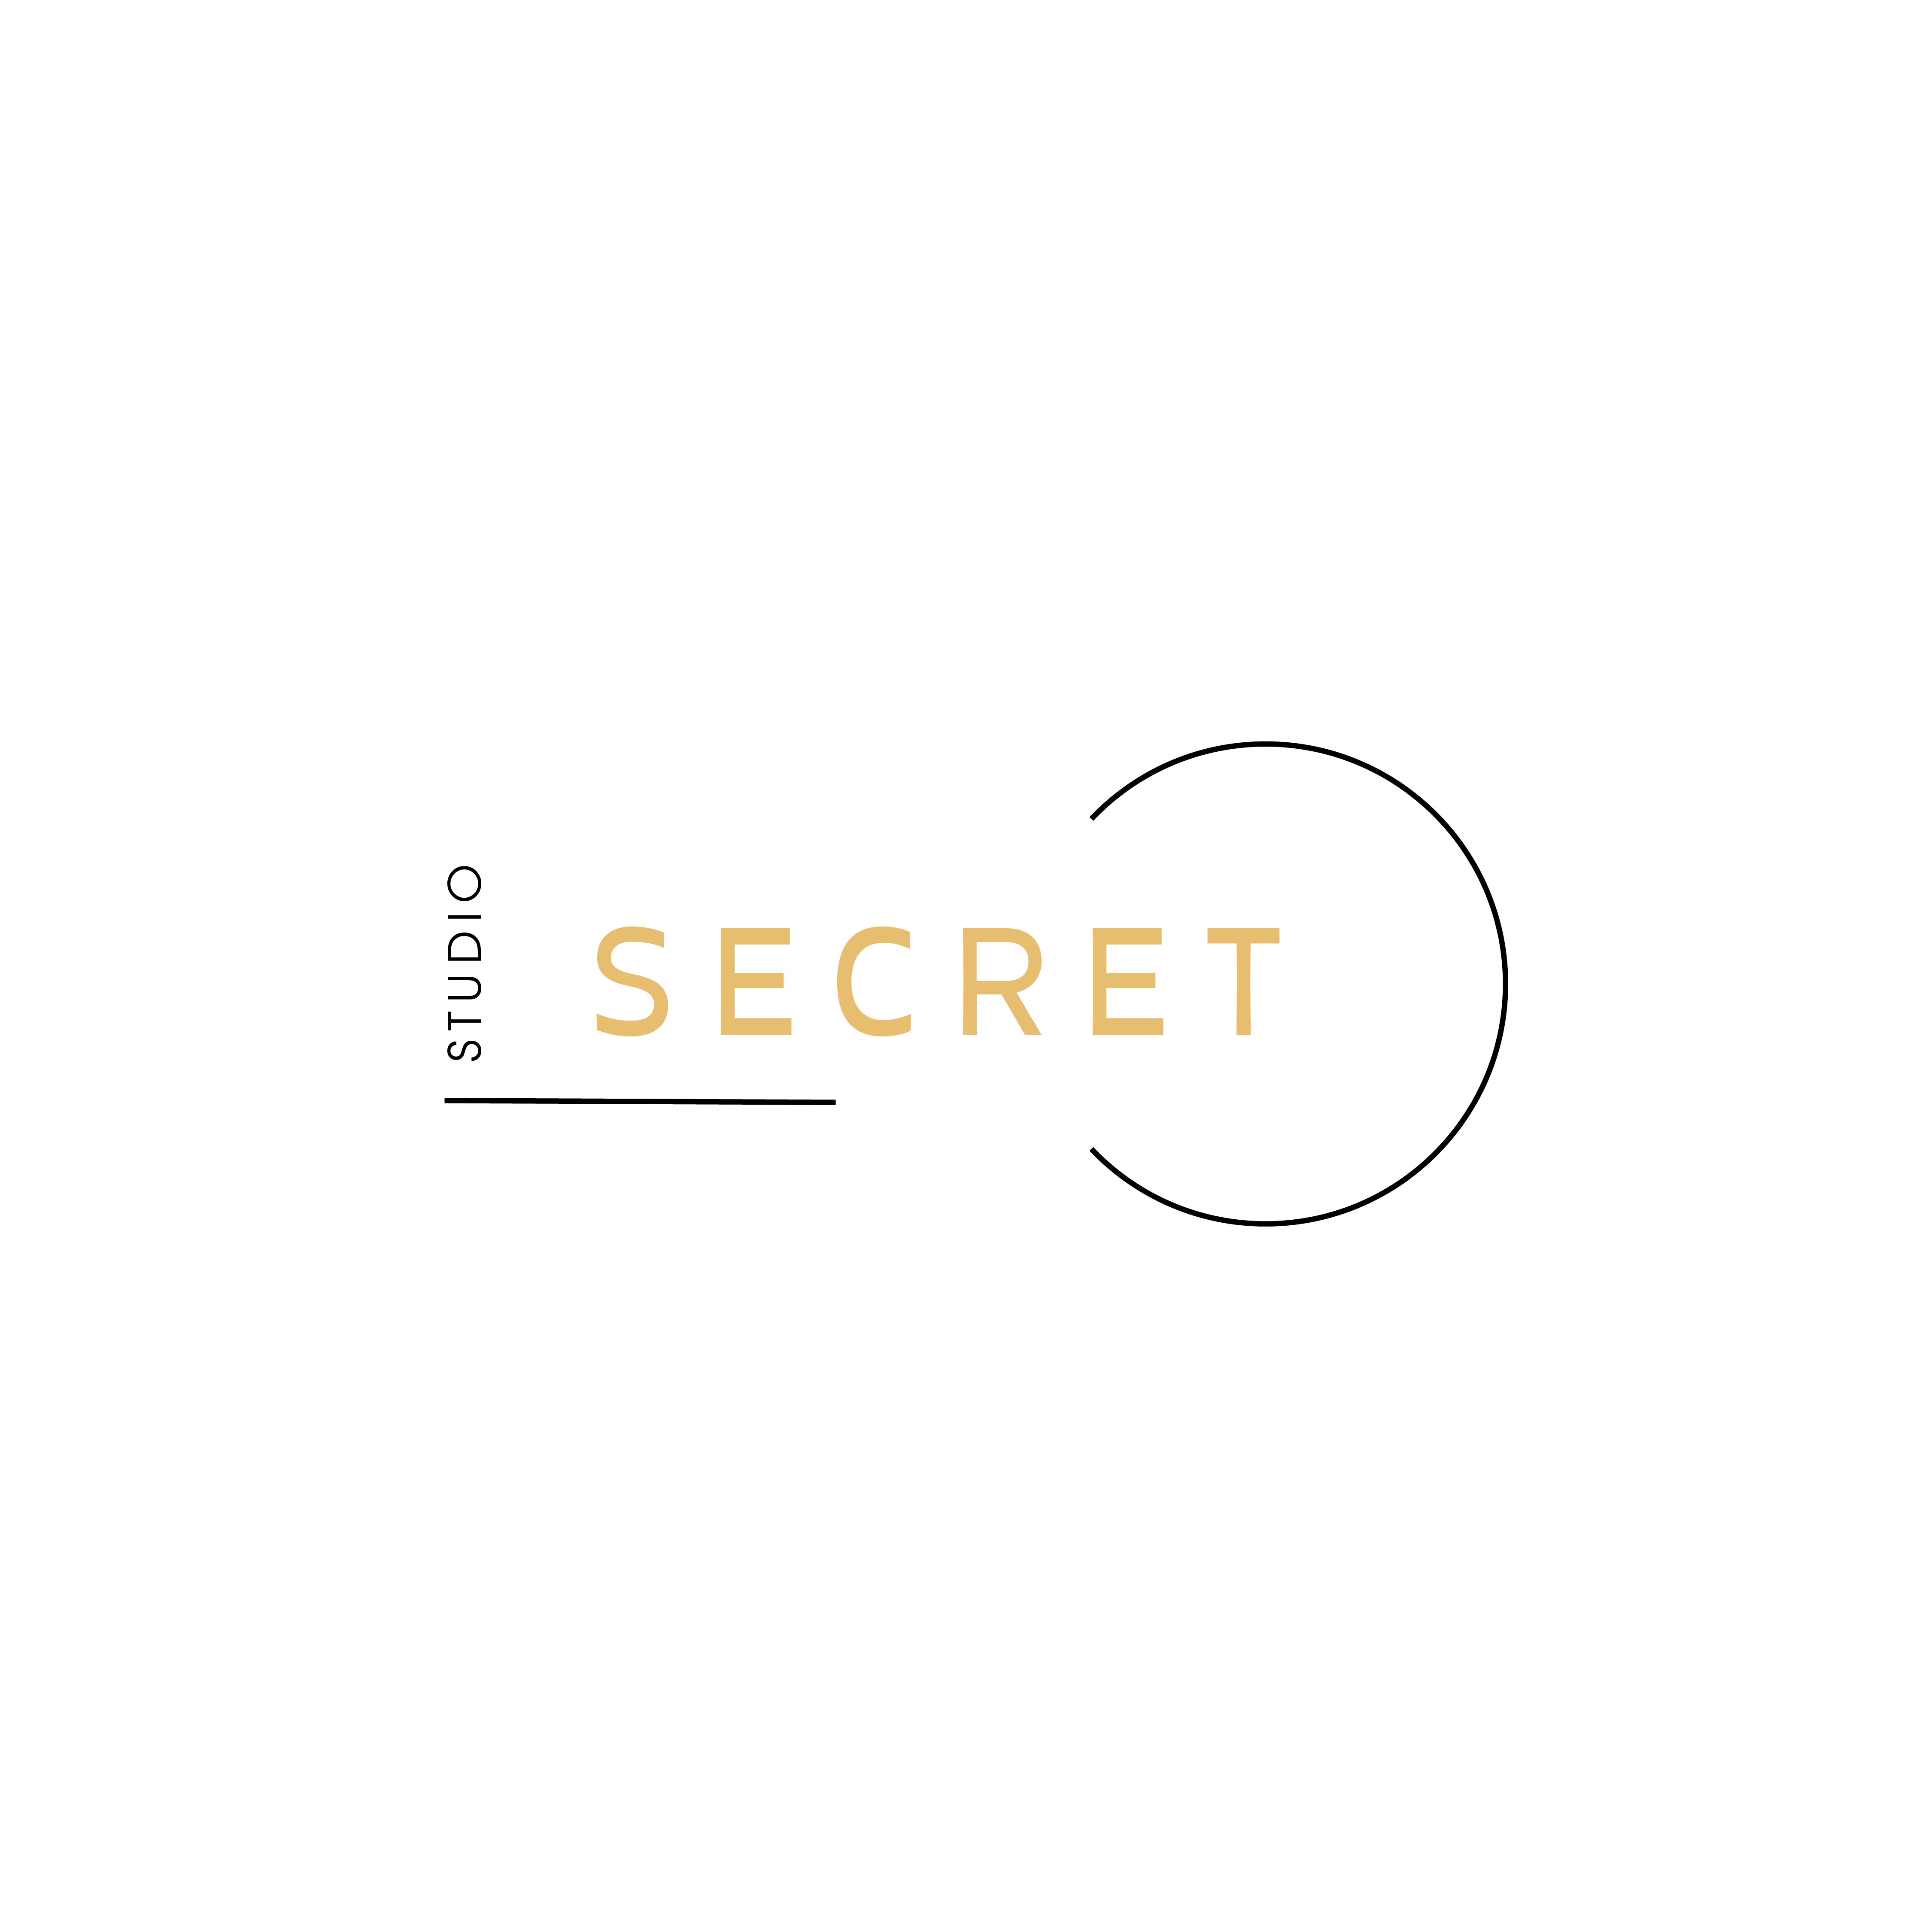 Студия secret. Queen Secret Studio, Чехов. Secret Atelier. Секрет нет студио. Forgiveness gaz, Secret Studio.